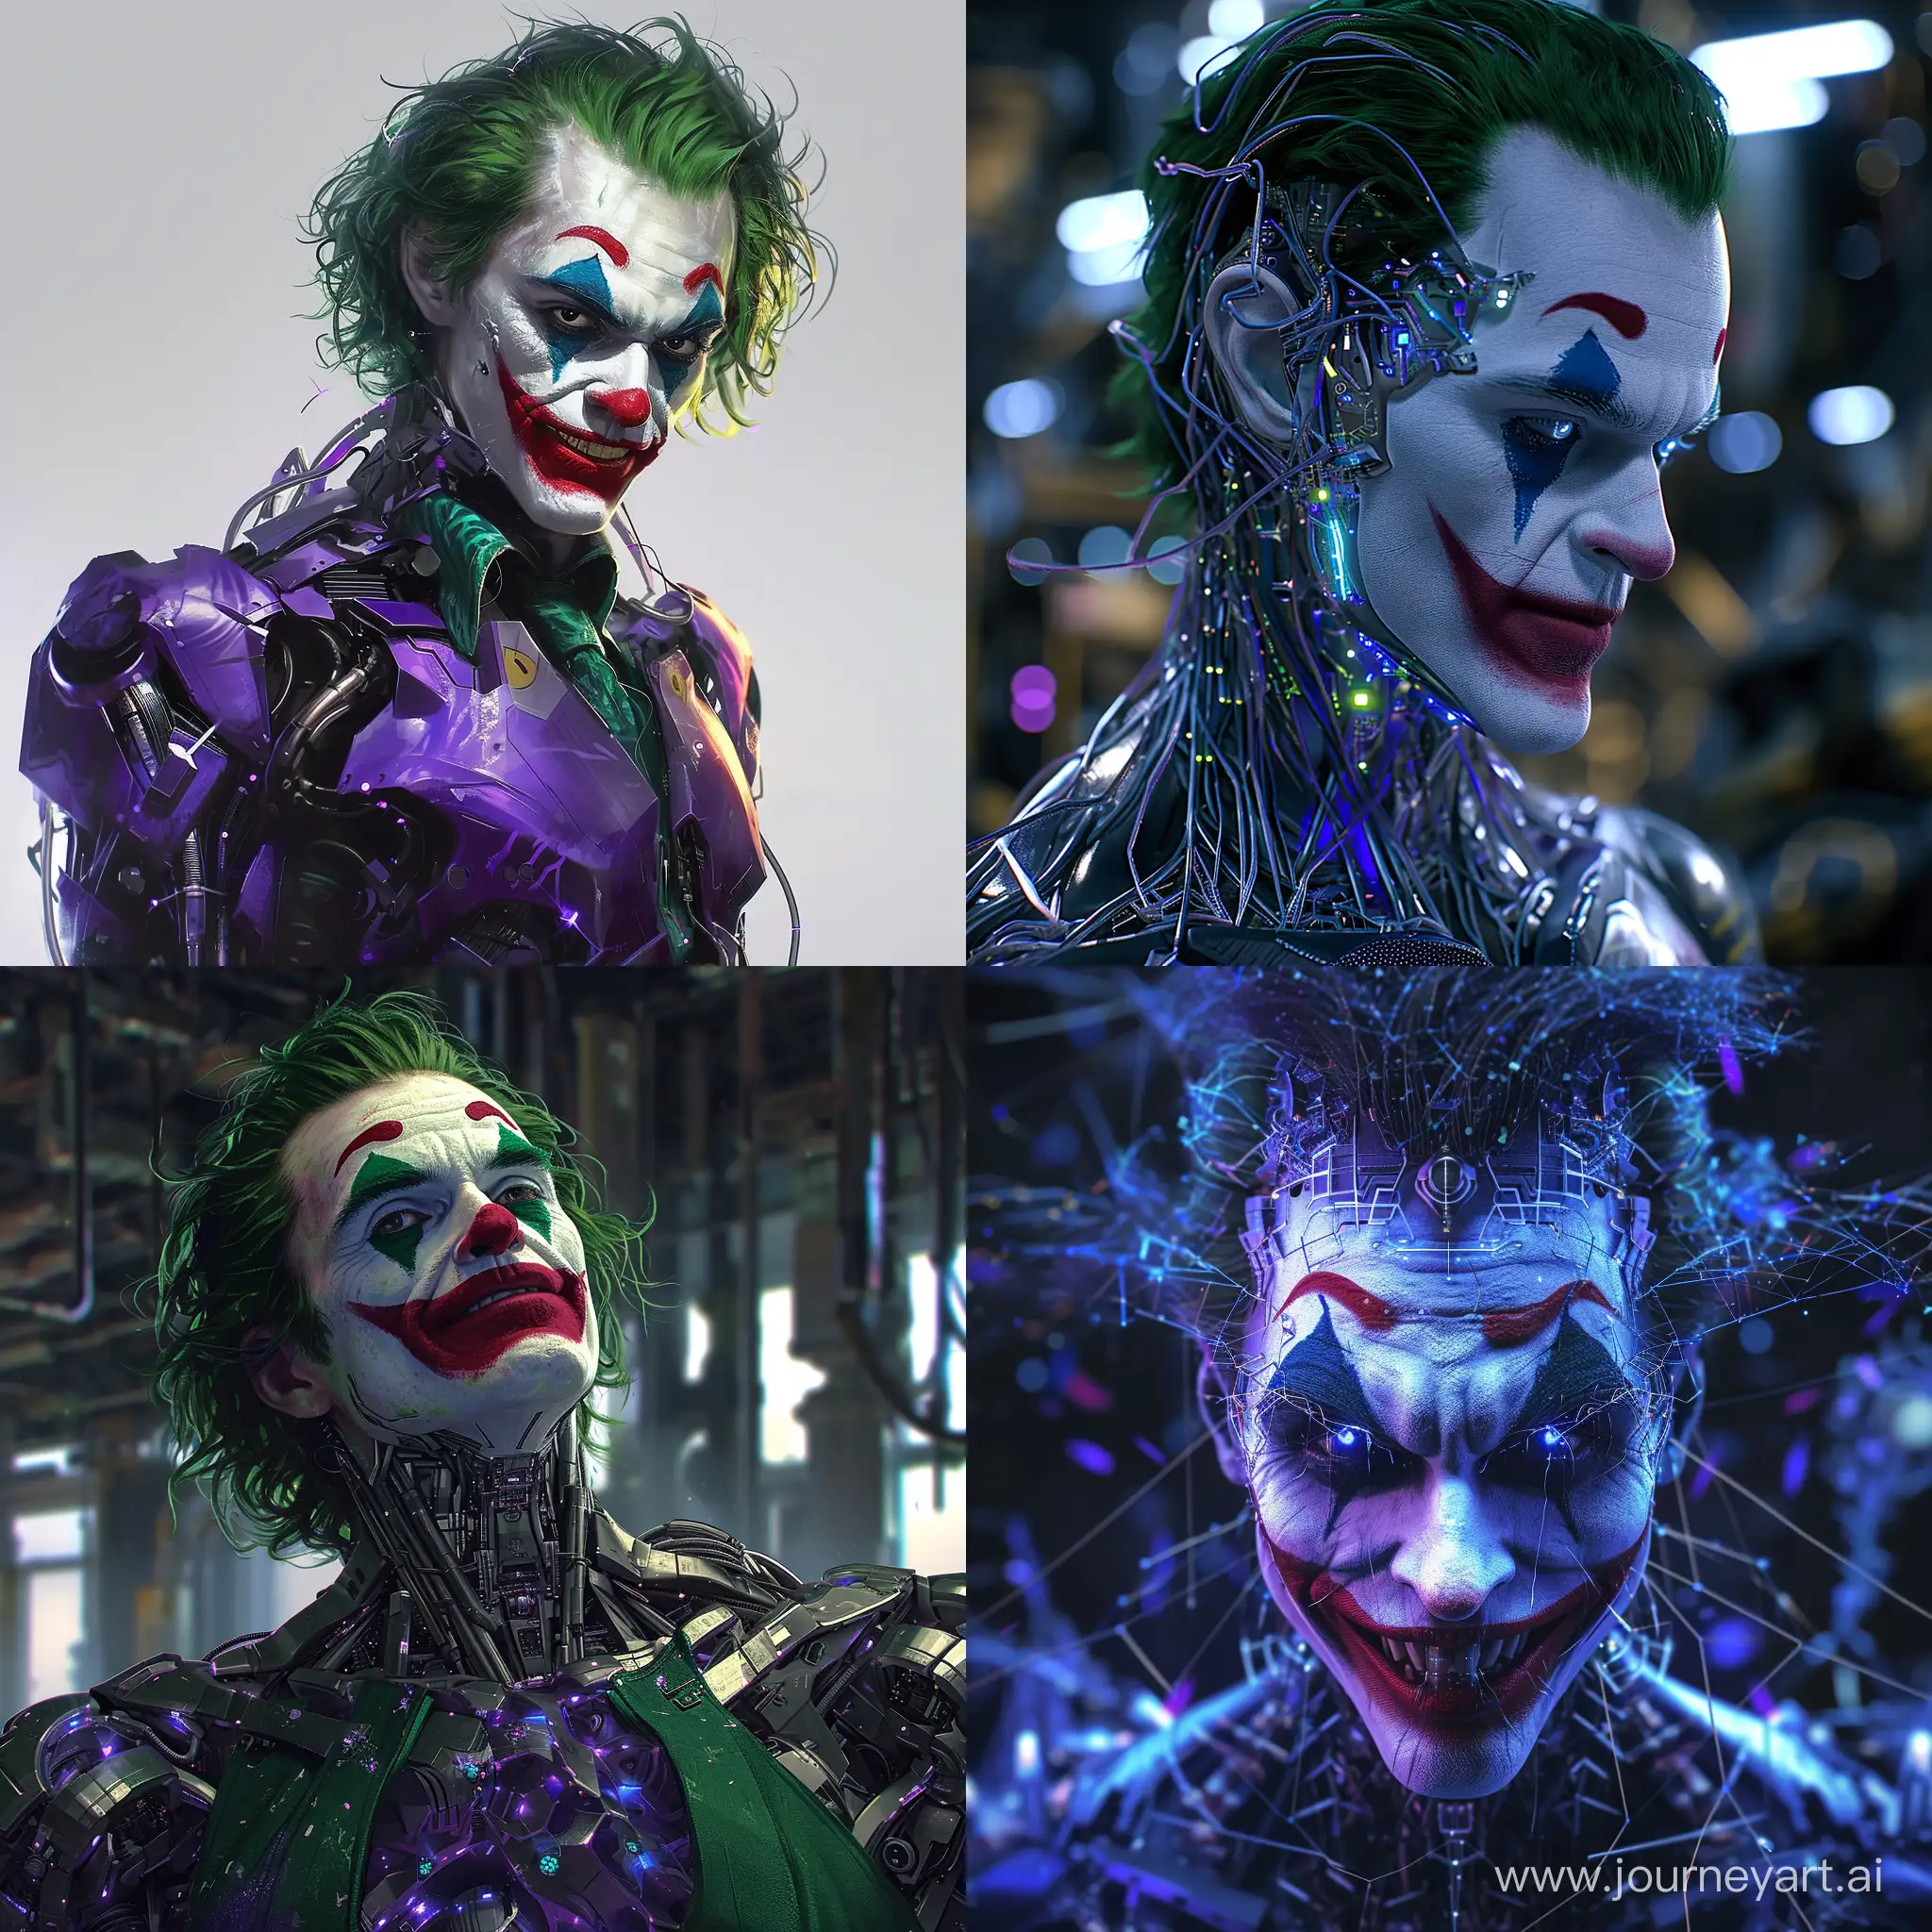 Futuristic-DC-Joker-with-Nanotechnology-Cyberpunk-Villain-Art